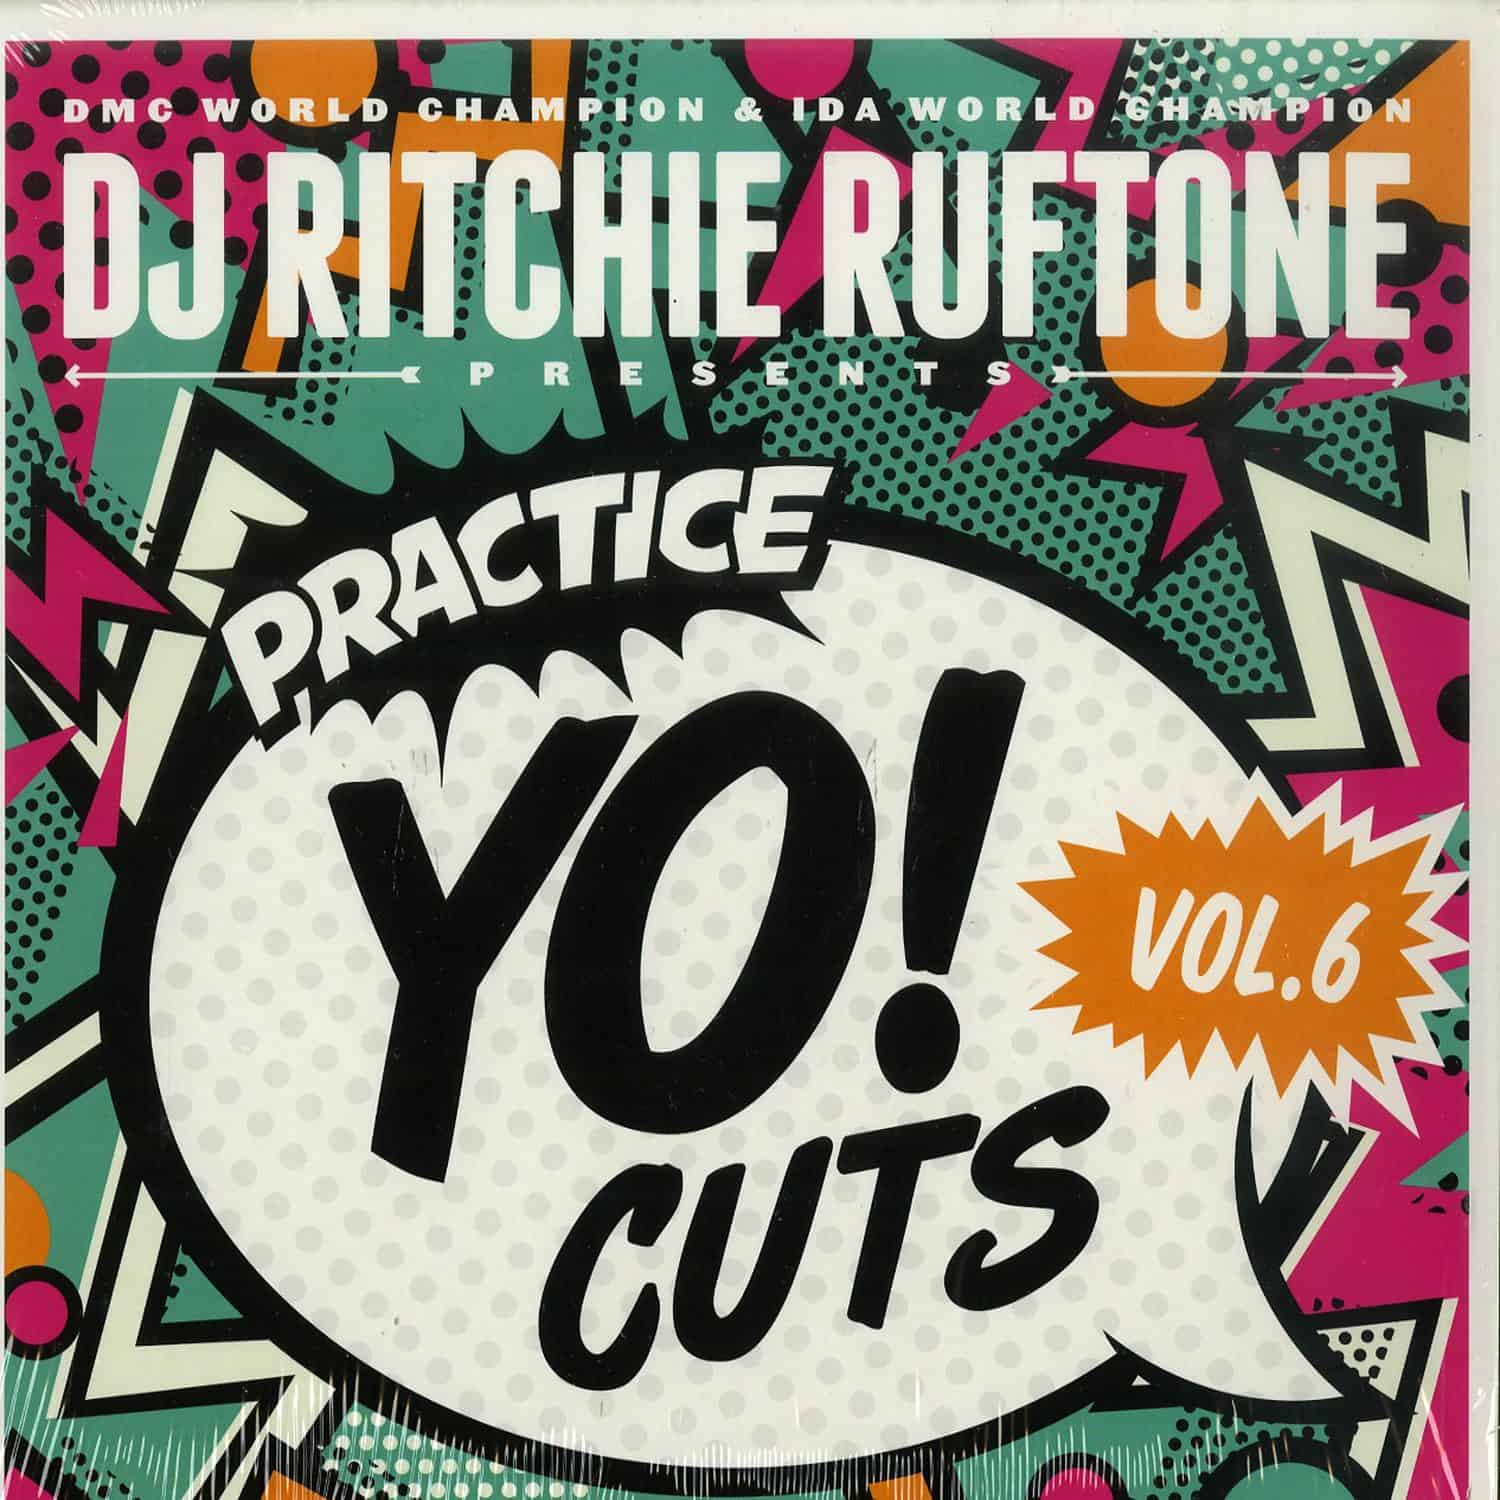 DJ Ritchie Ruftone - PRACTICE YO! CUTS VOL. 6 